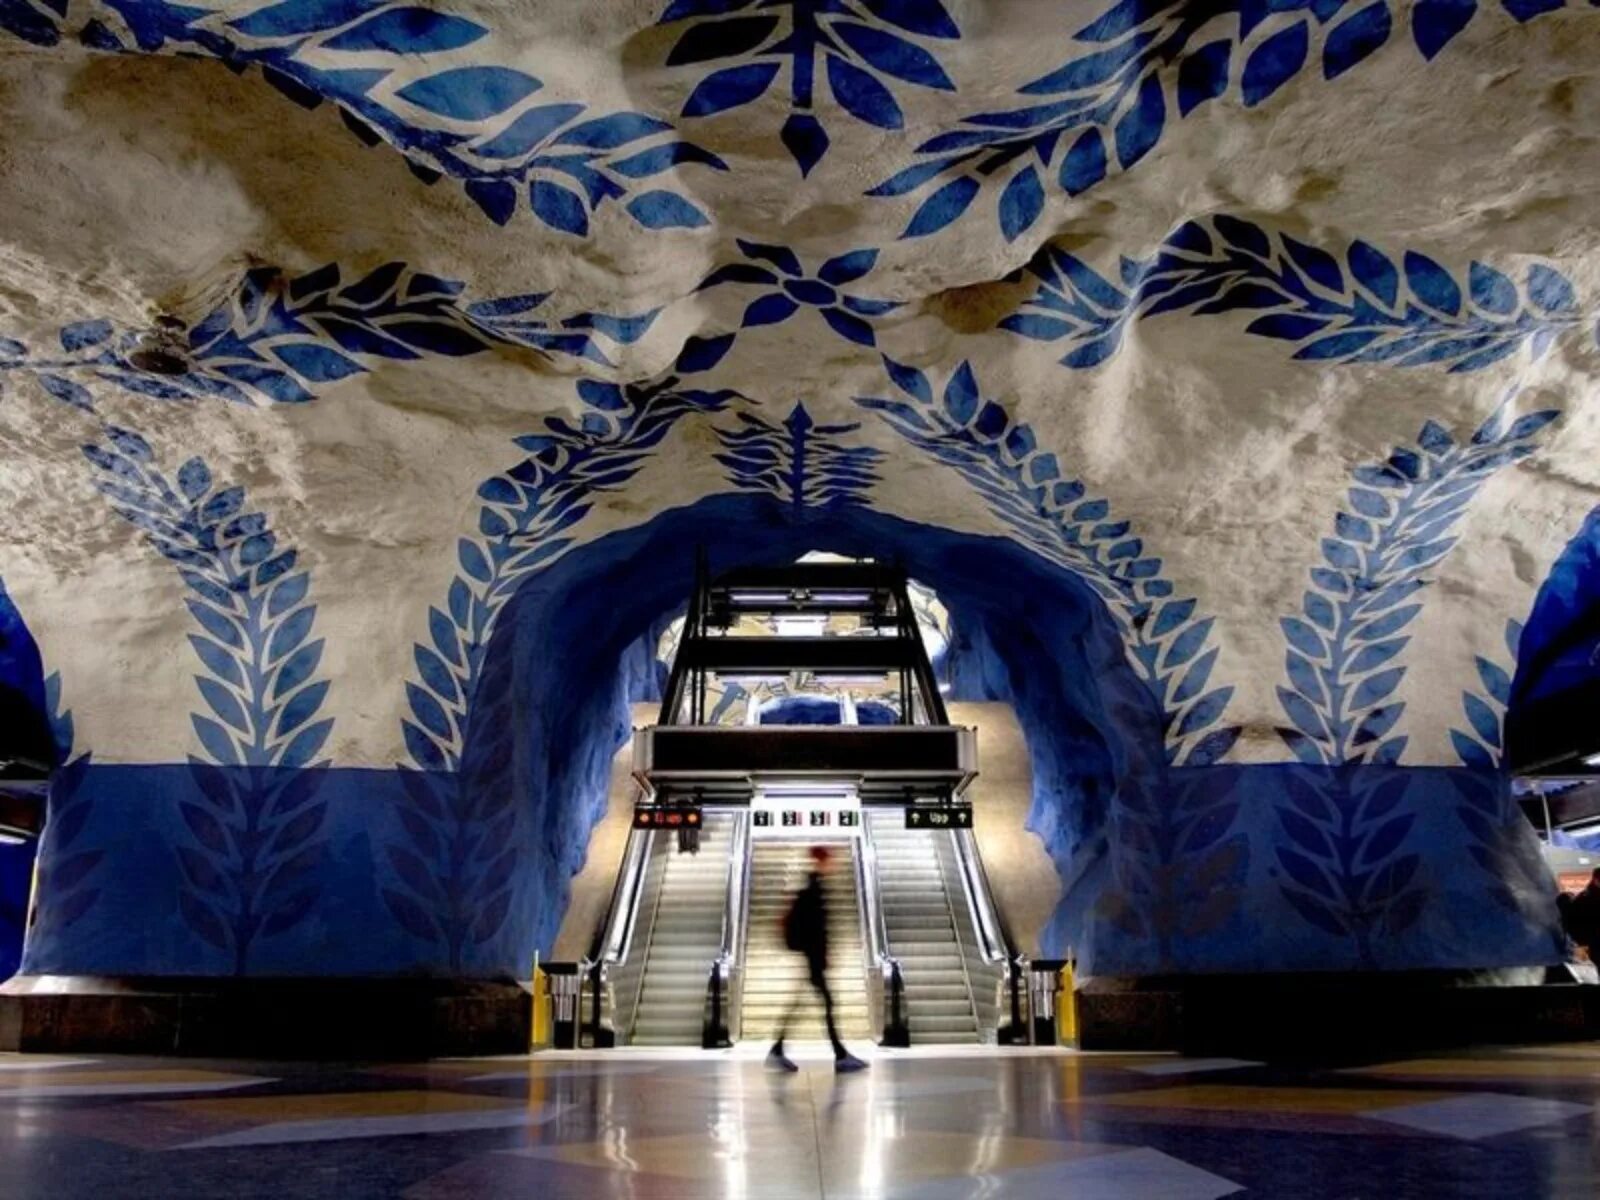 Семь уникальных станций метрополитена. Метро в Швеции Стокгольм. Метро Стокгольма t Centralen. Станция t-Centralen в Стокгольме. Т-Сентрален, Стокгольм метро.